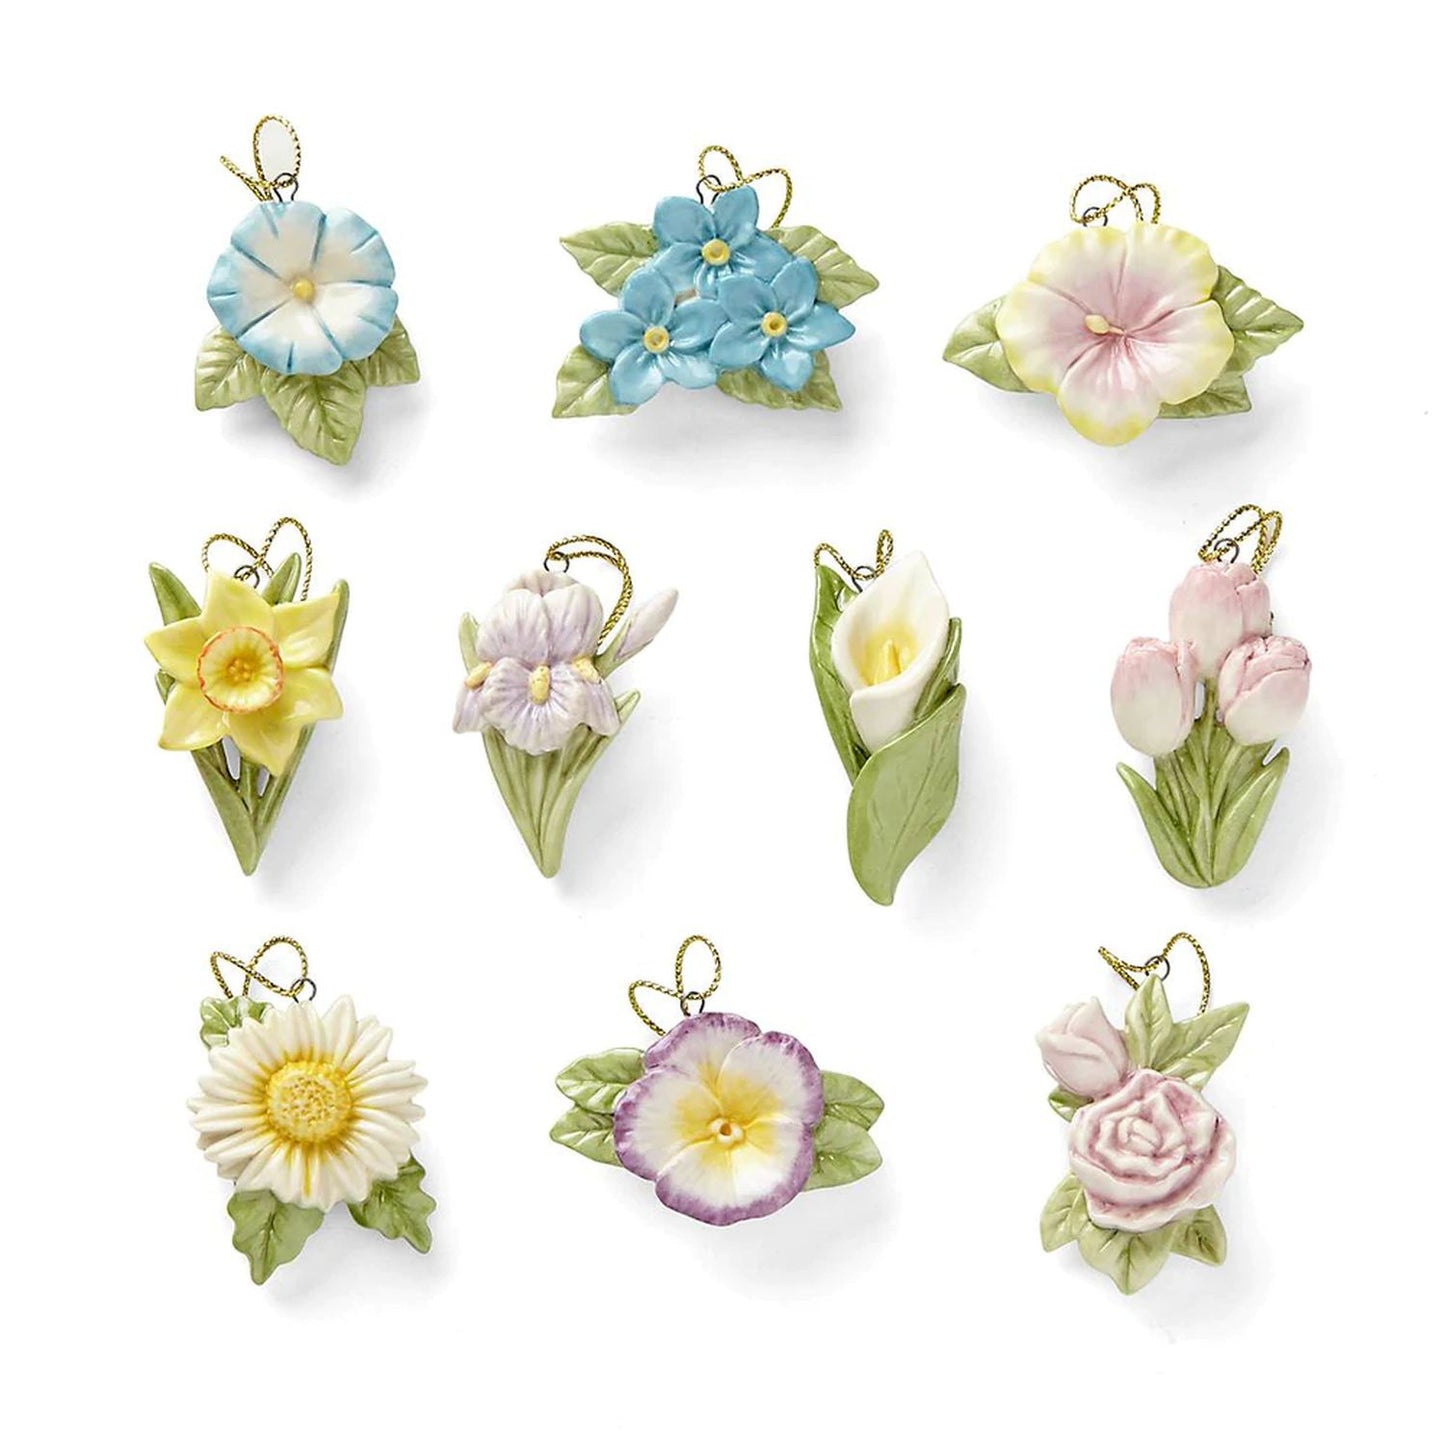 Lenox Celebrate Flowers 10-Piece Ornaments Set